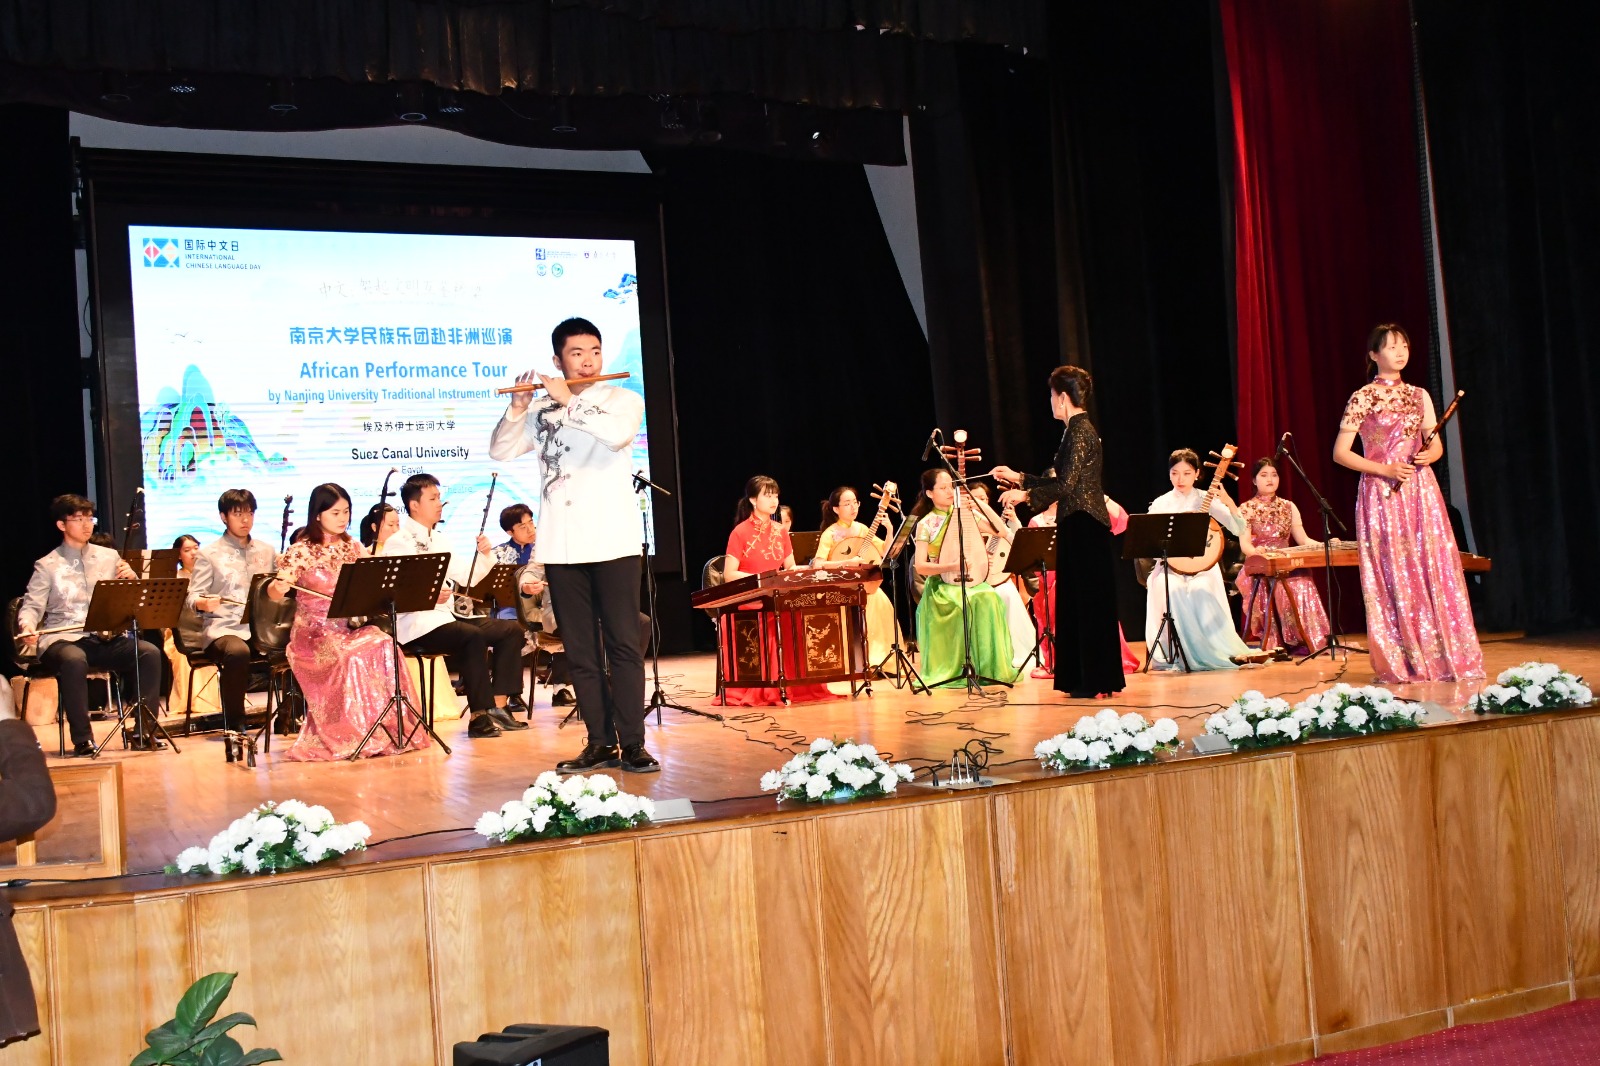 فقرات غنائية متنوعة للفرقة الموسيقية لجامعة نانجينغ (6)